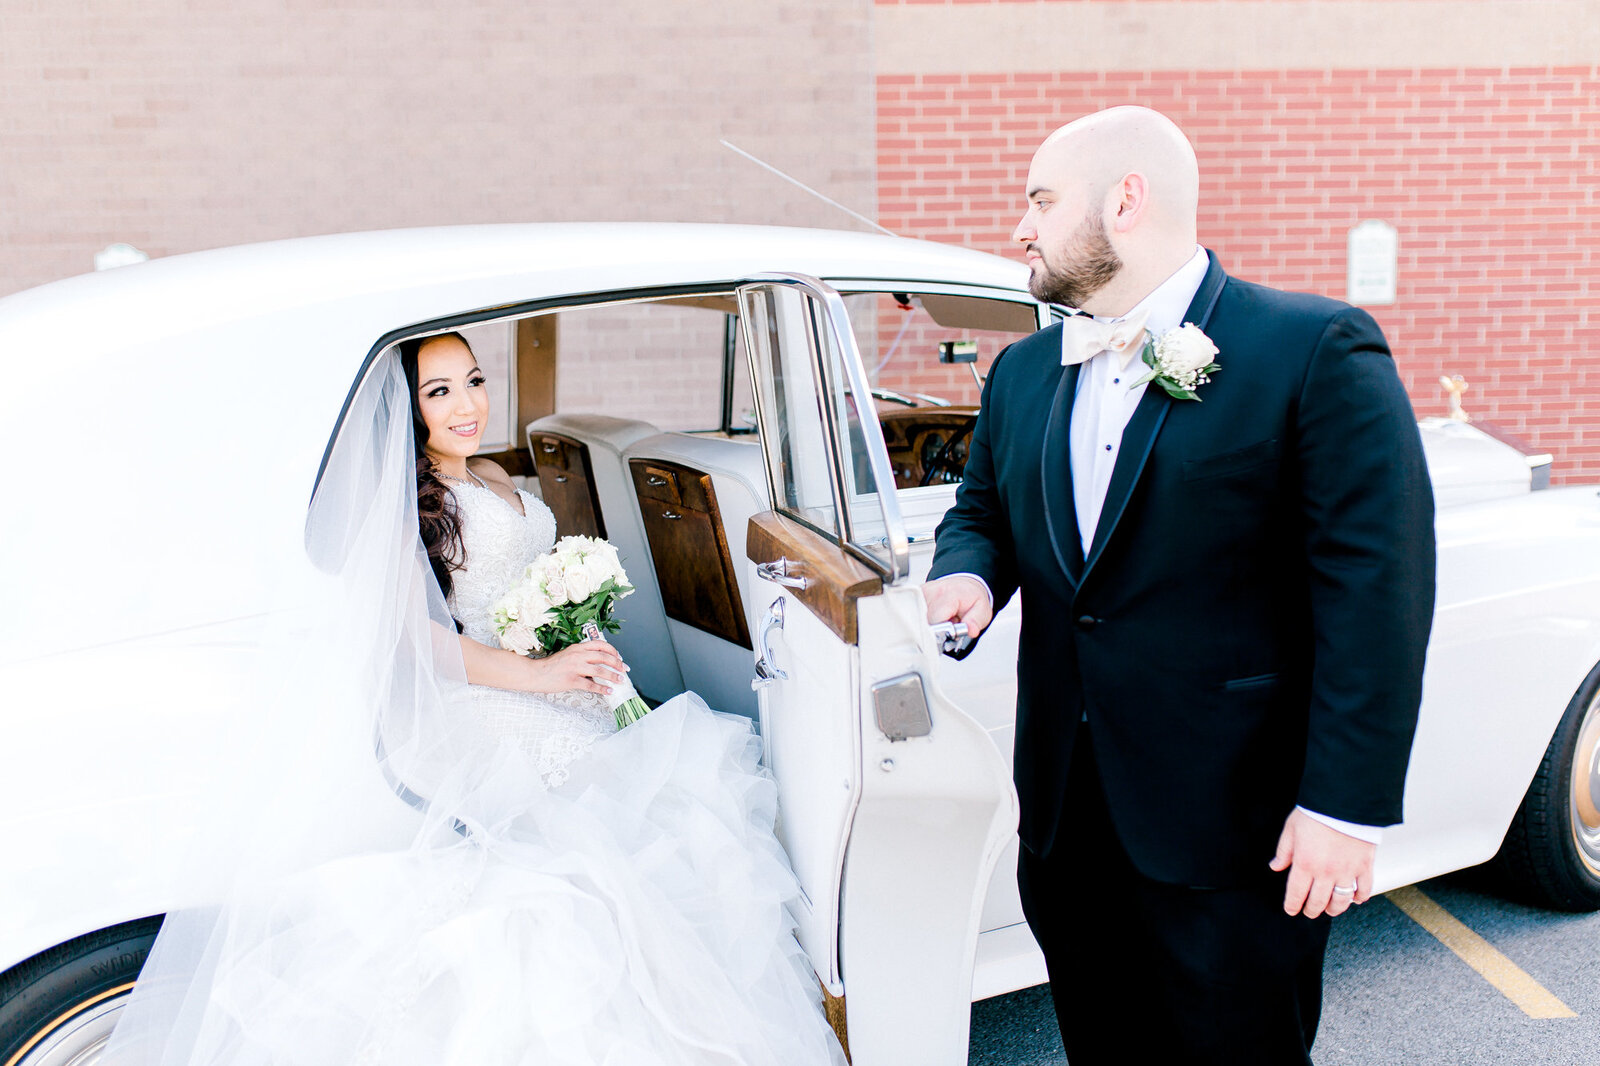 average wedding photographer cost chicago wedding traveling